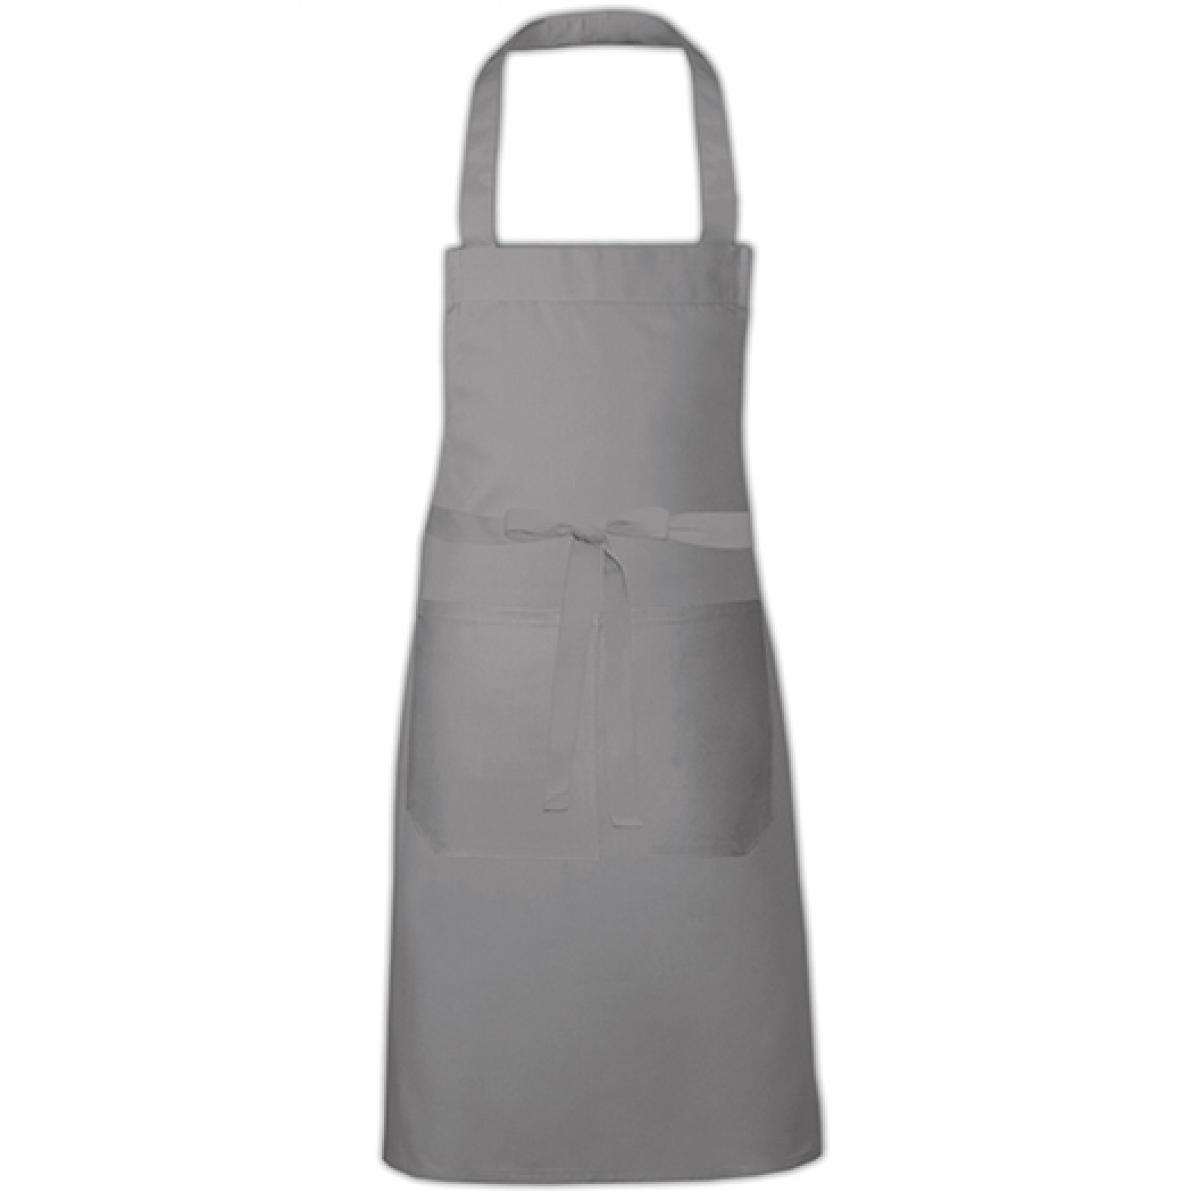 Hersteller: Link Kitchen Wear Herstellernummer: HS8073 Artikelbezeichnung: Hobby Apron - 73 x 80 cm - Waschbar bis 60 °C Farbe: Mouse Grey